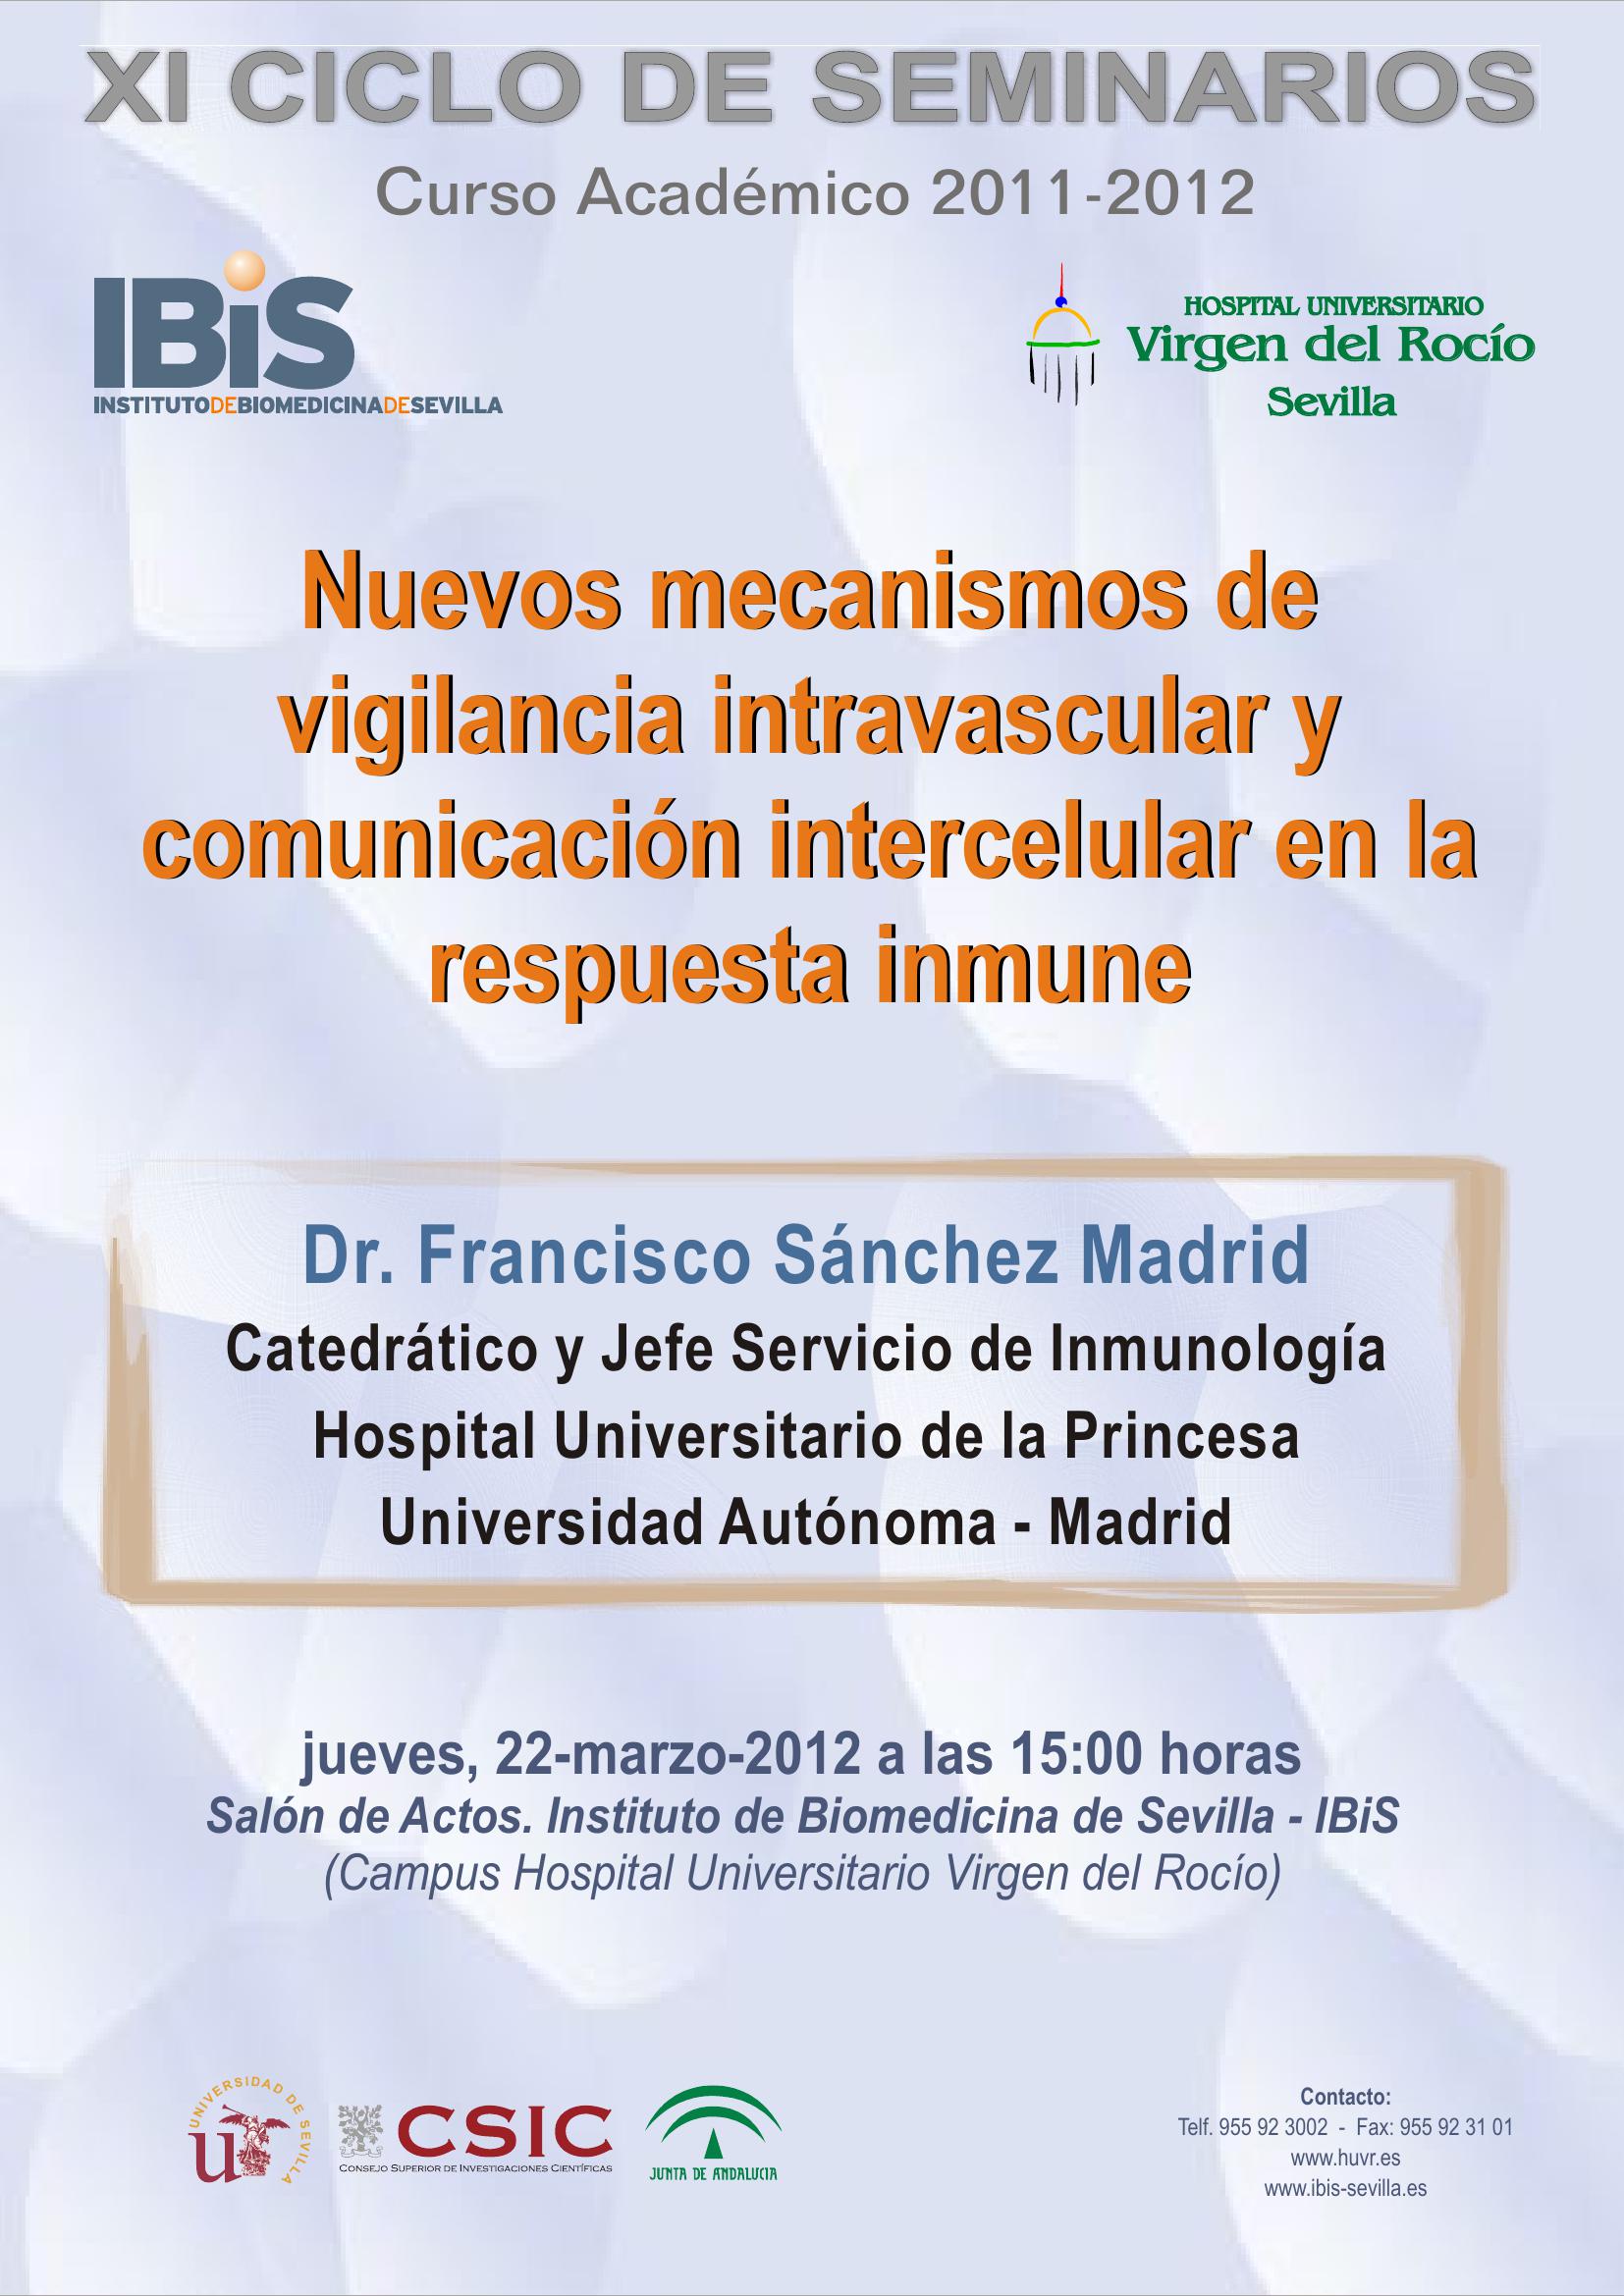 Poster: Nuevos mecanismos de vigilancia intravascular y comunicación intercelular en la respuesta inmune.